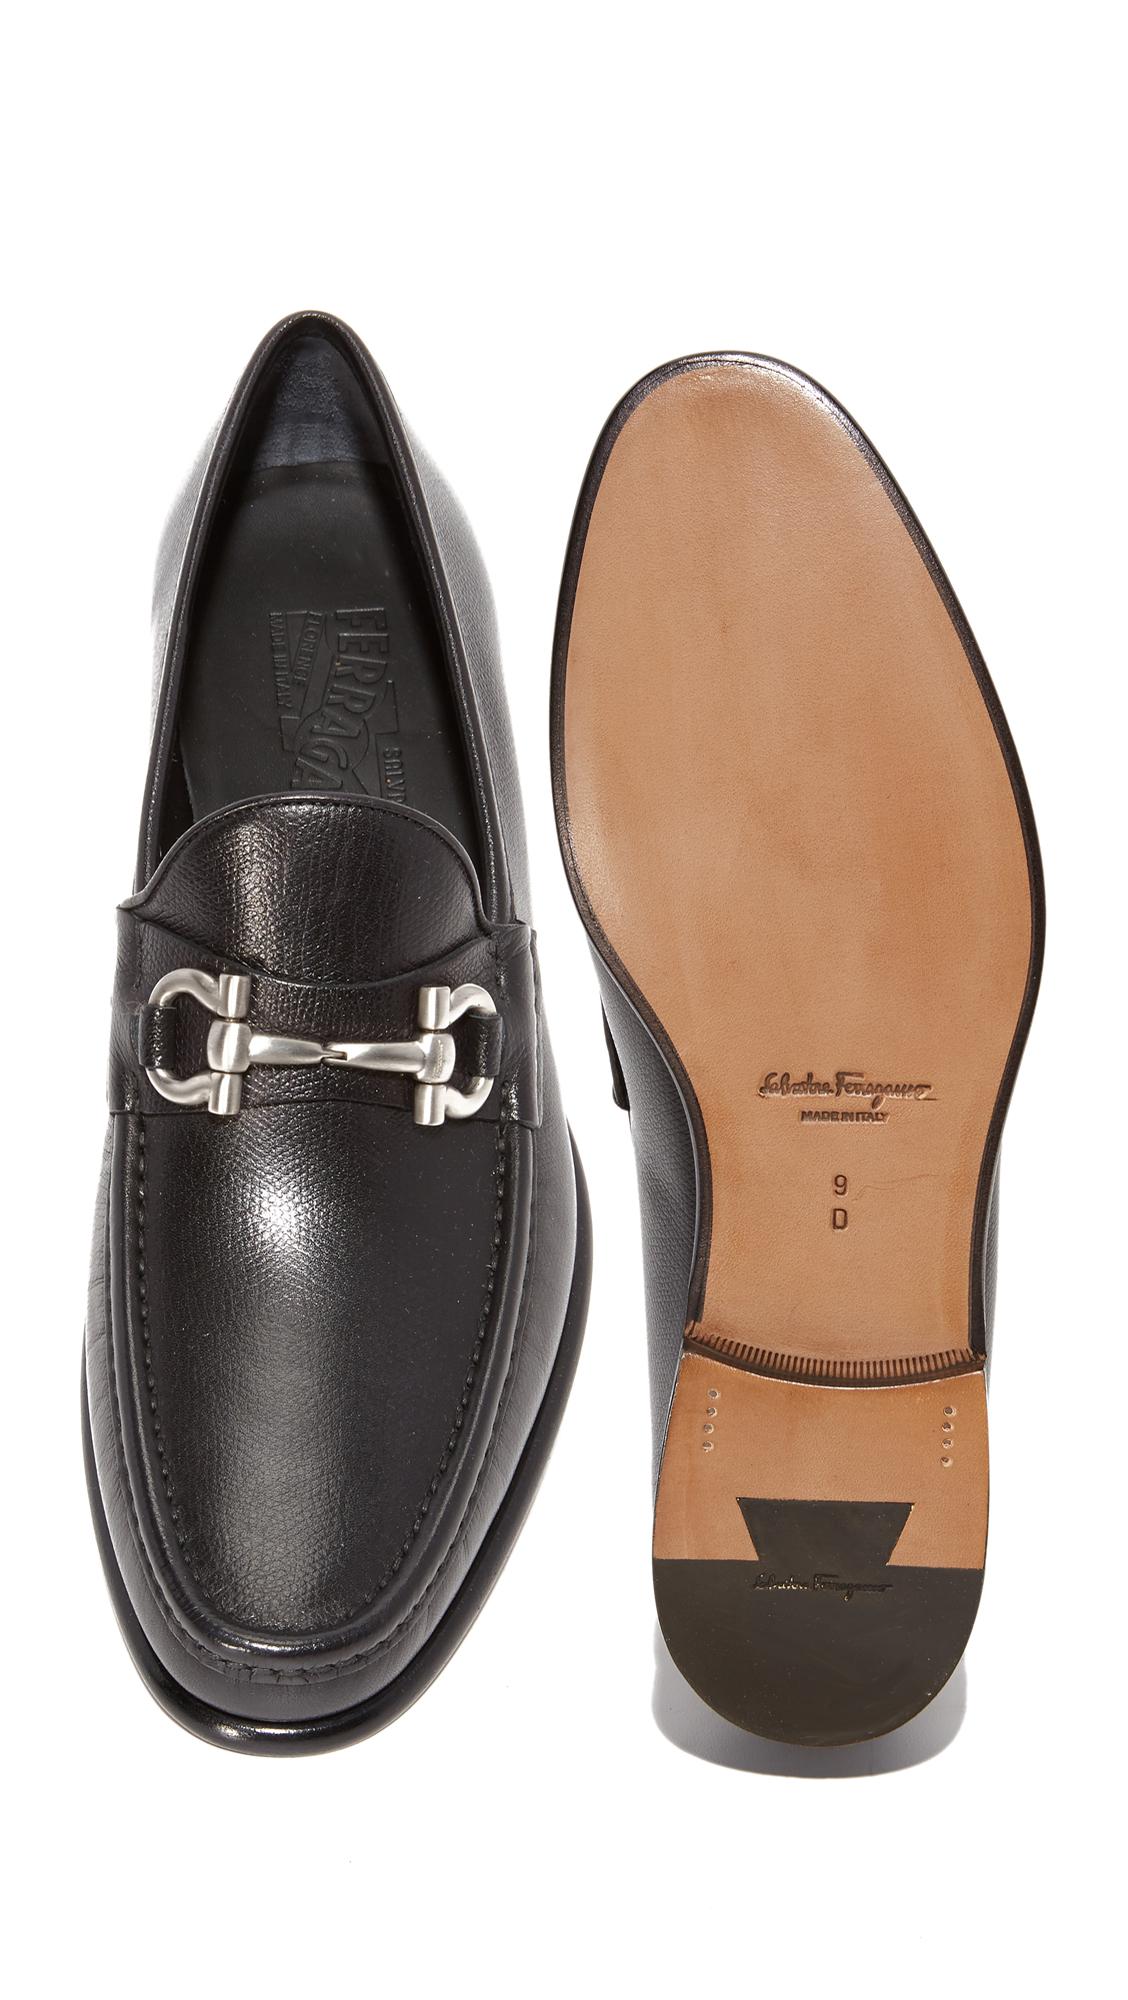 Ferragamo Mason Bit Leather Loafers in Black for Men - Lyst